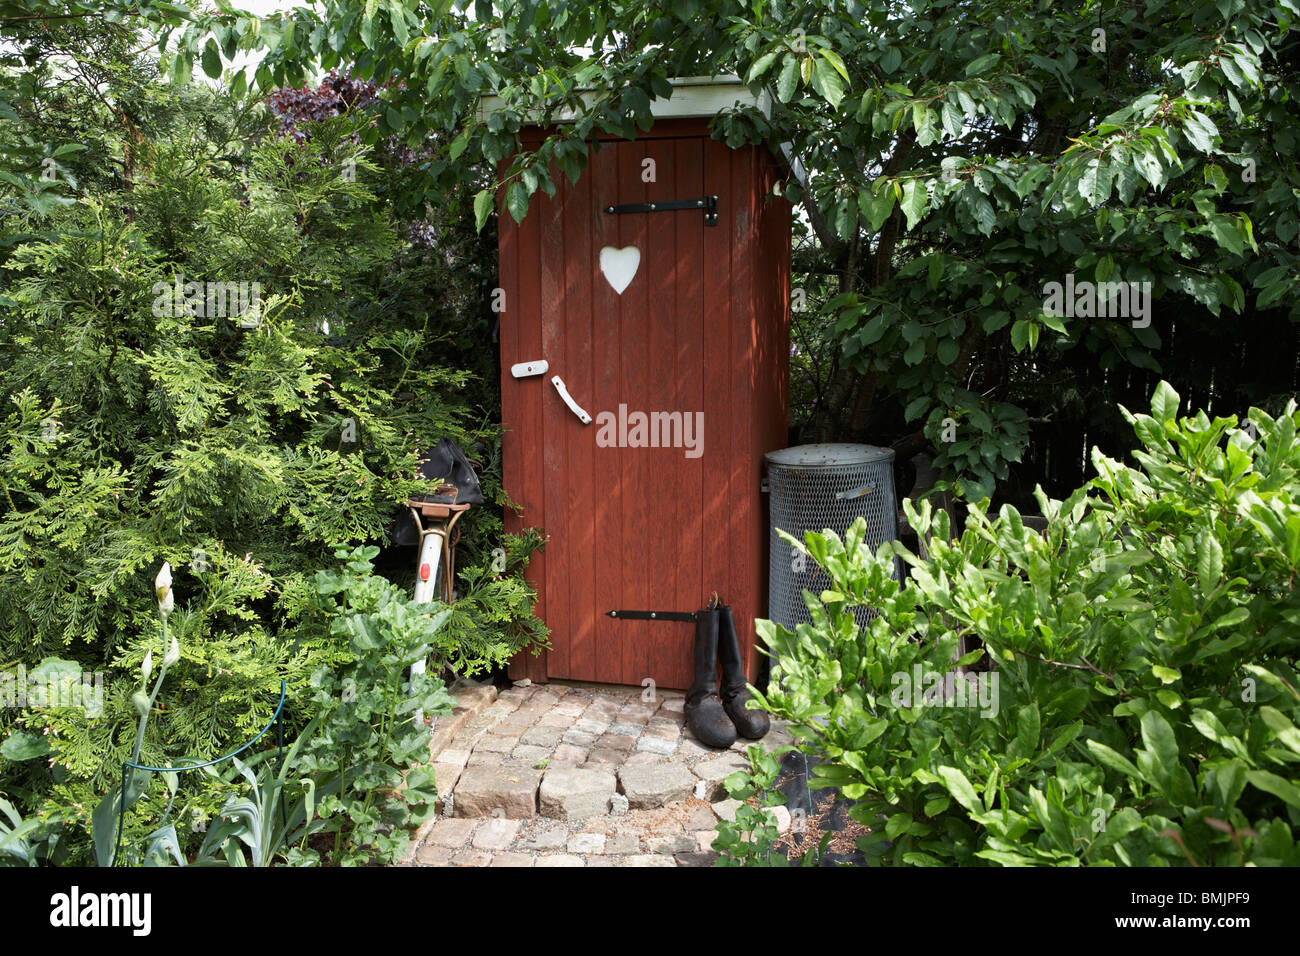 Scandinavia, Sweden, Halland, Falkenberg, View of toilet in garden Stock Photo